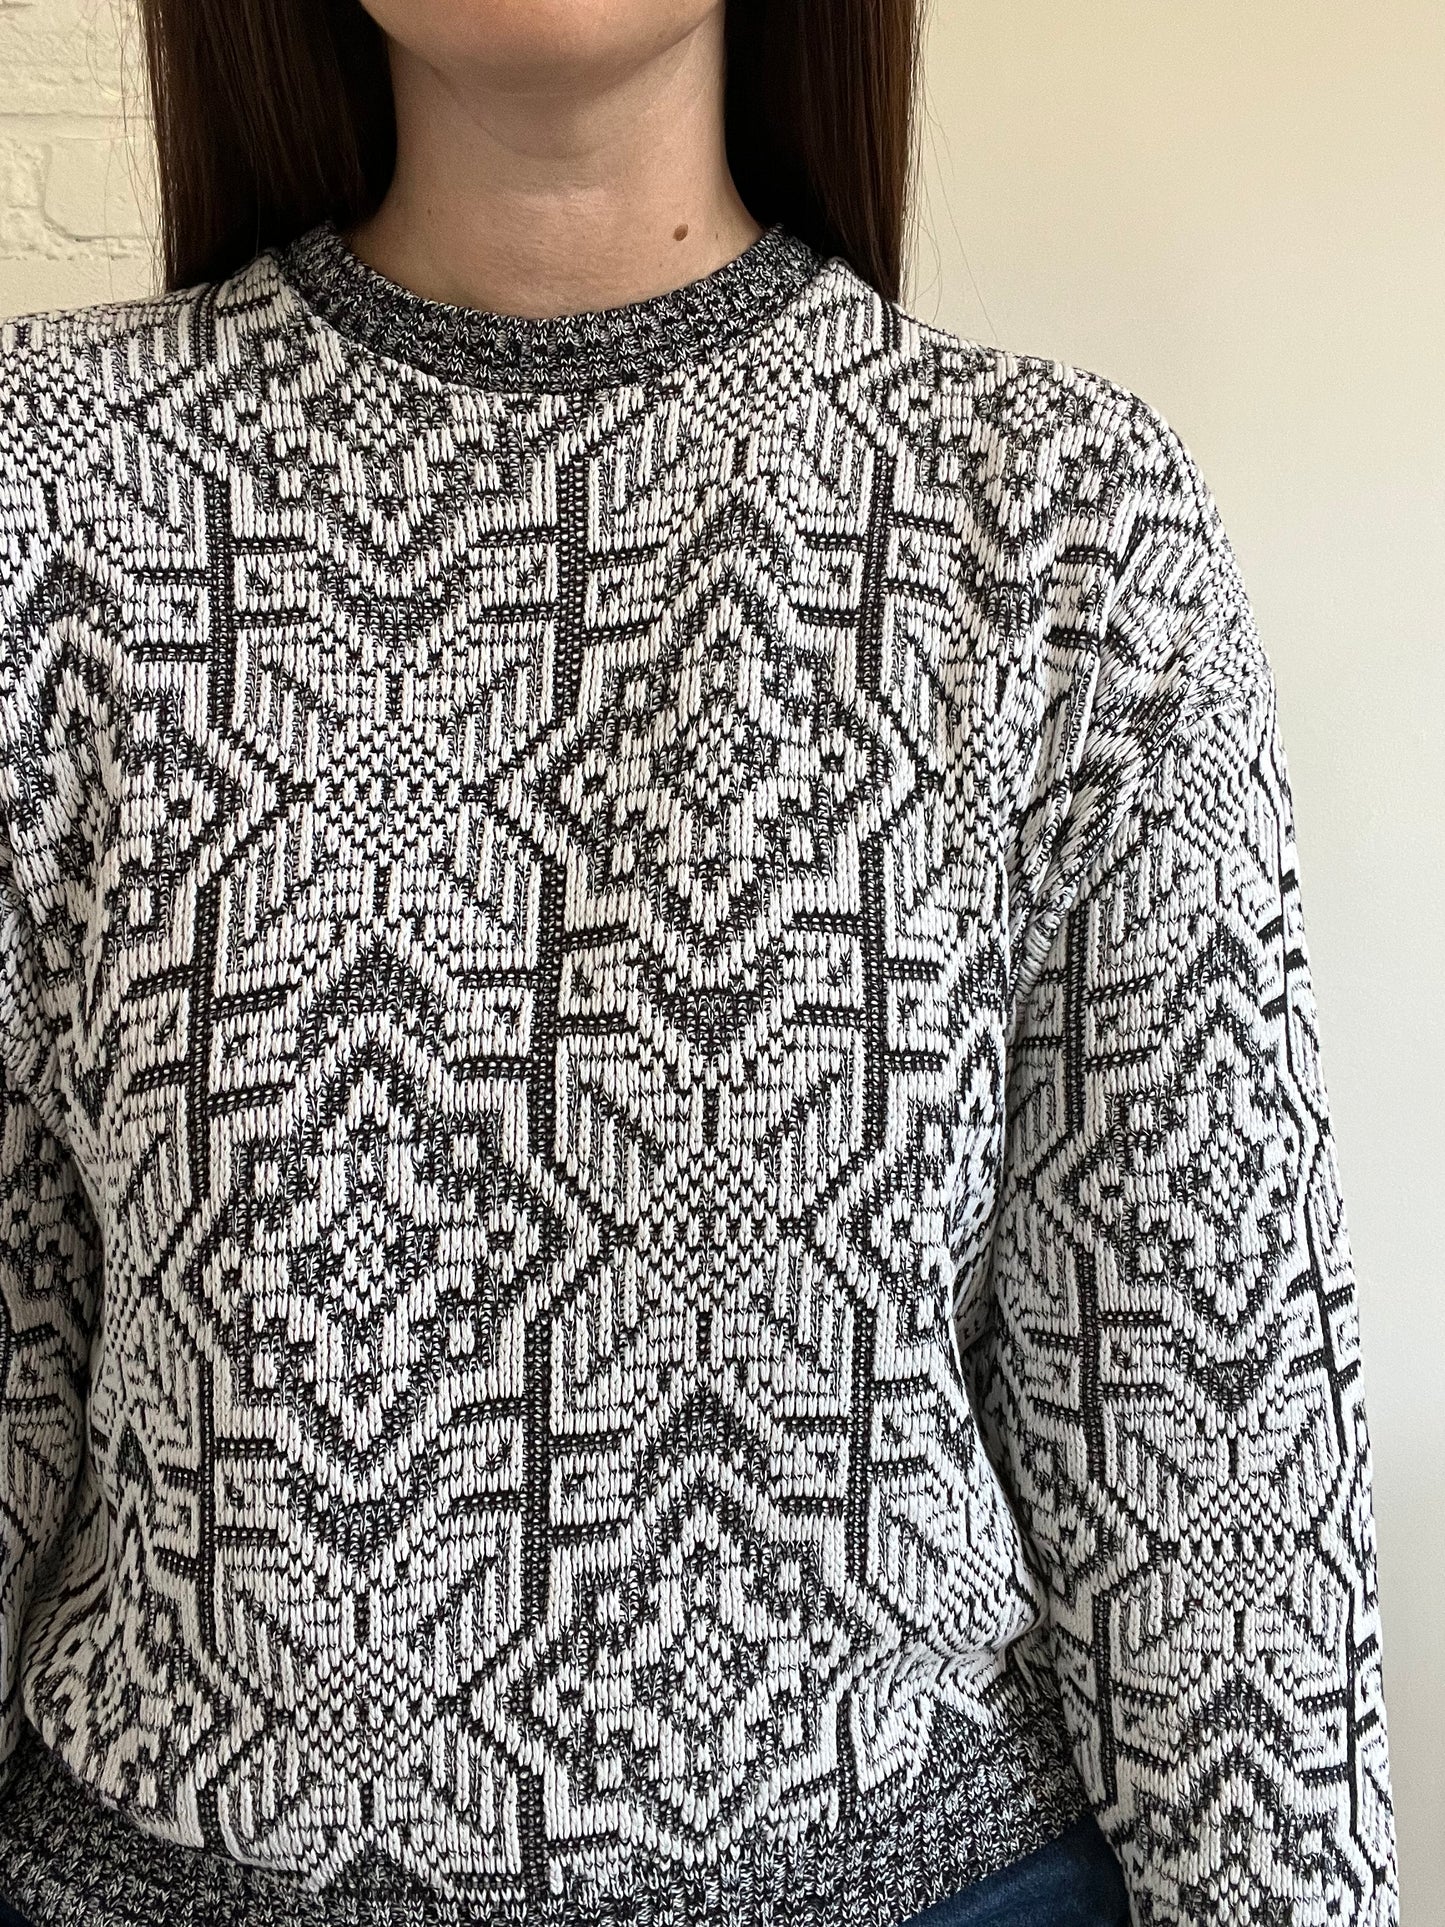 B&W Geometric Knit Sweater - S